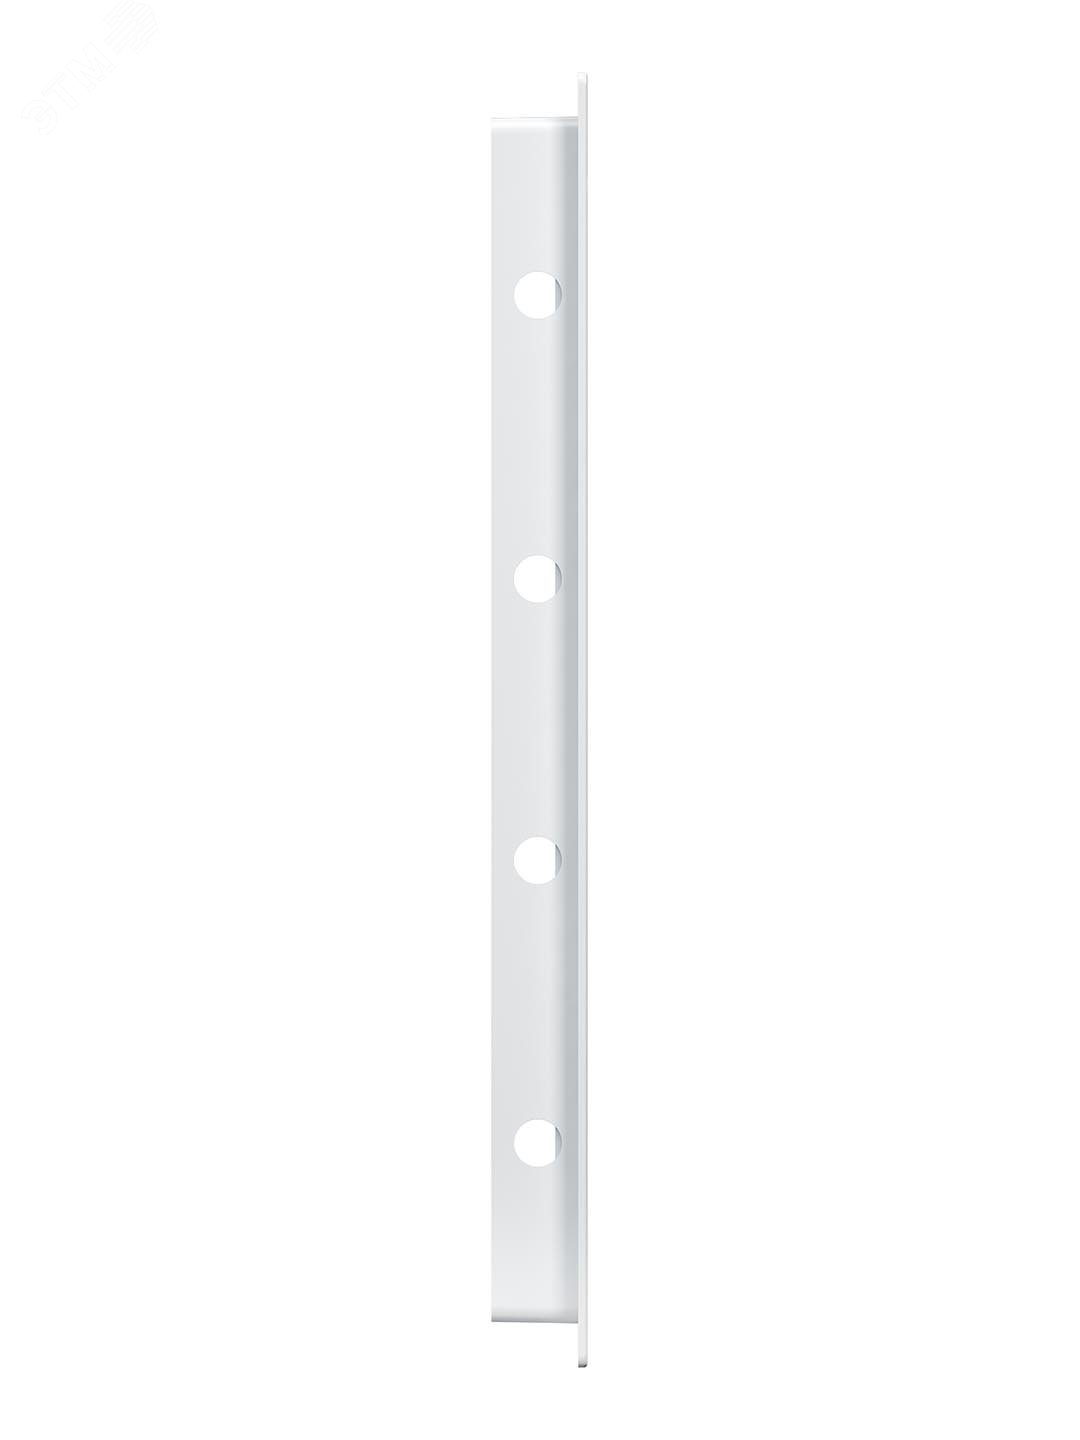 Люк-дверца ревизионный пластиковый нажимной 223х323 с фланцем 200х300 L2030N EVECS - превью 3